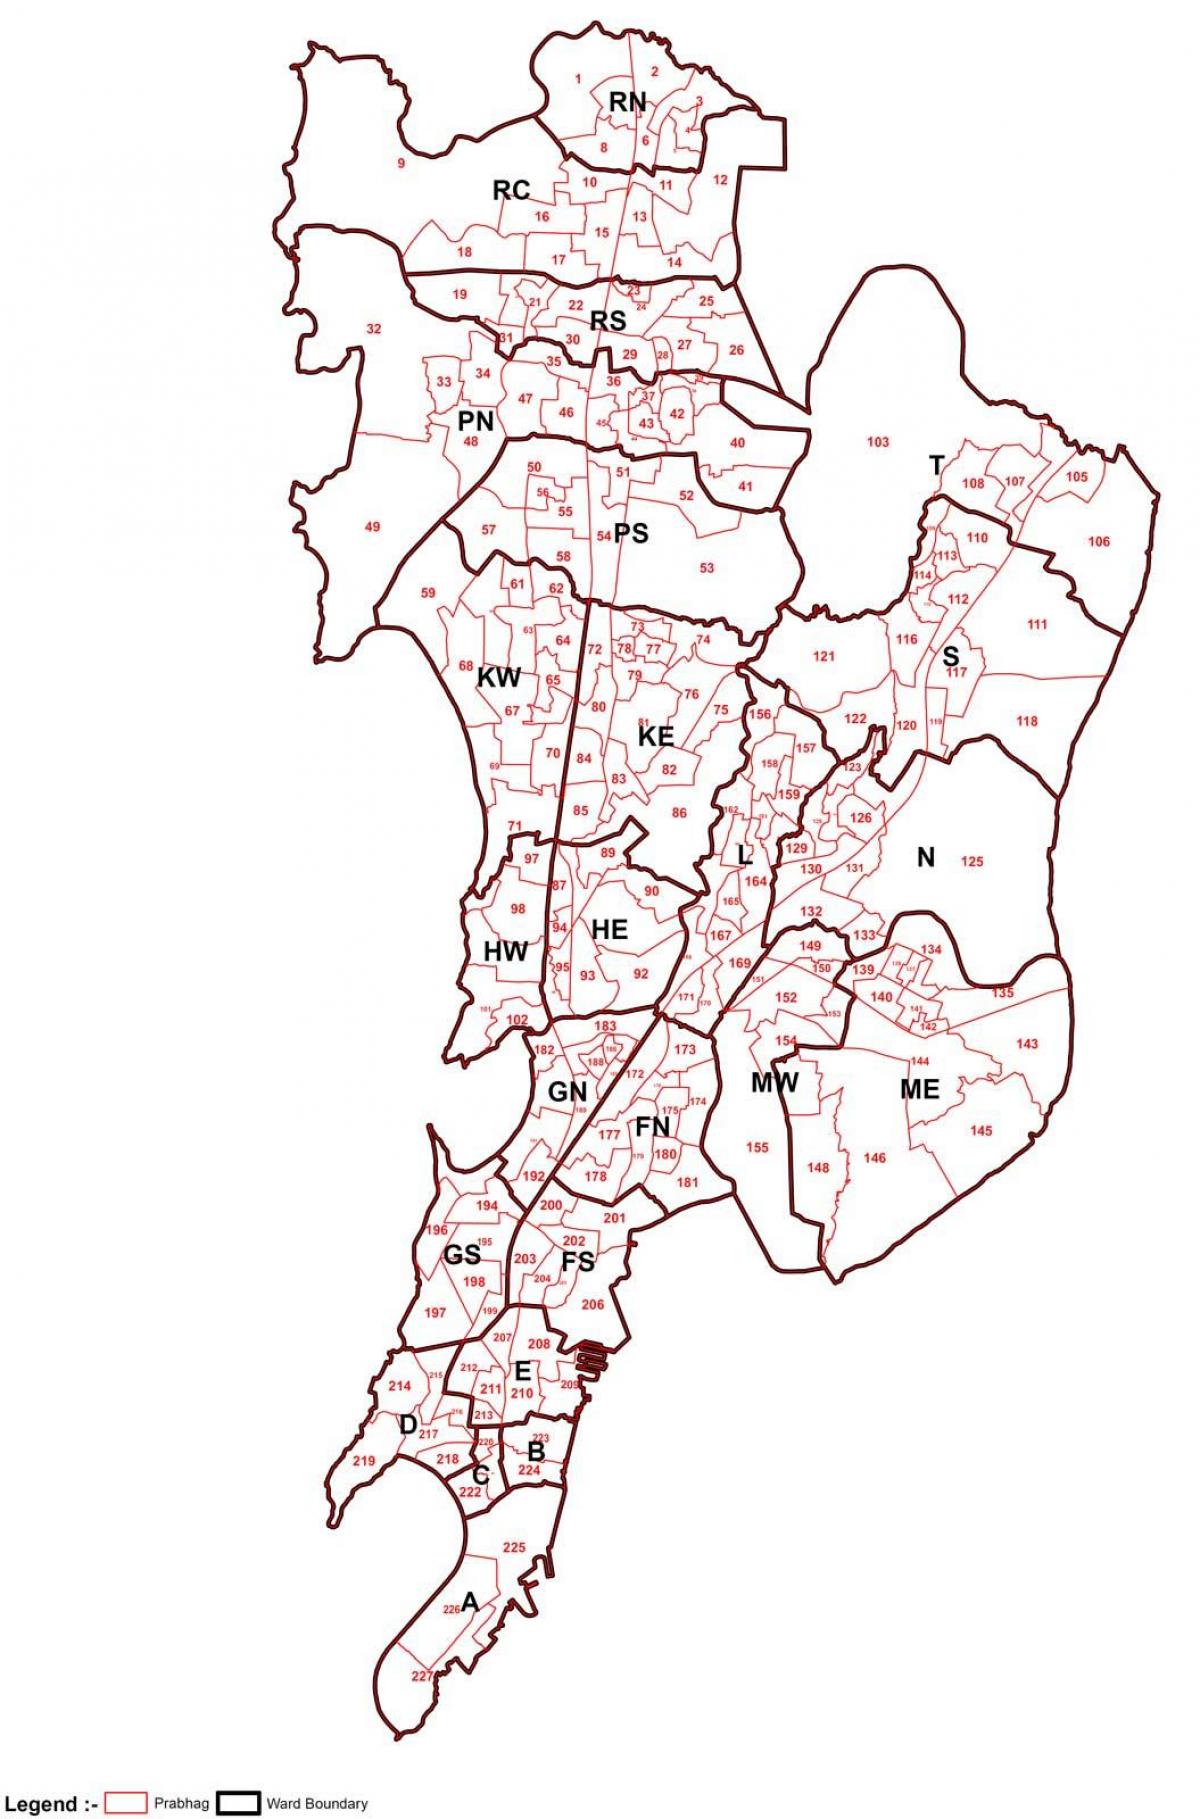 મુંબઇ નકશો વિસ્તાર મુજબની